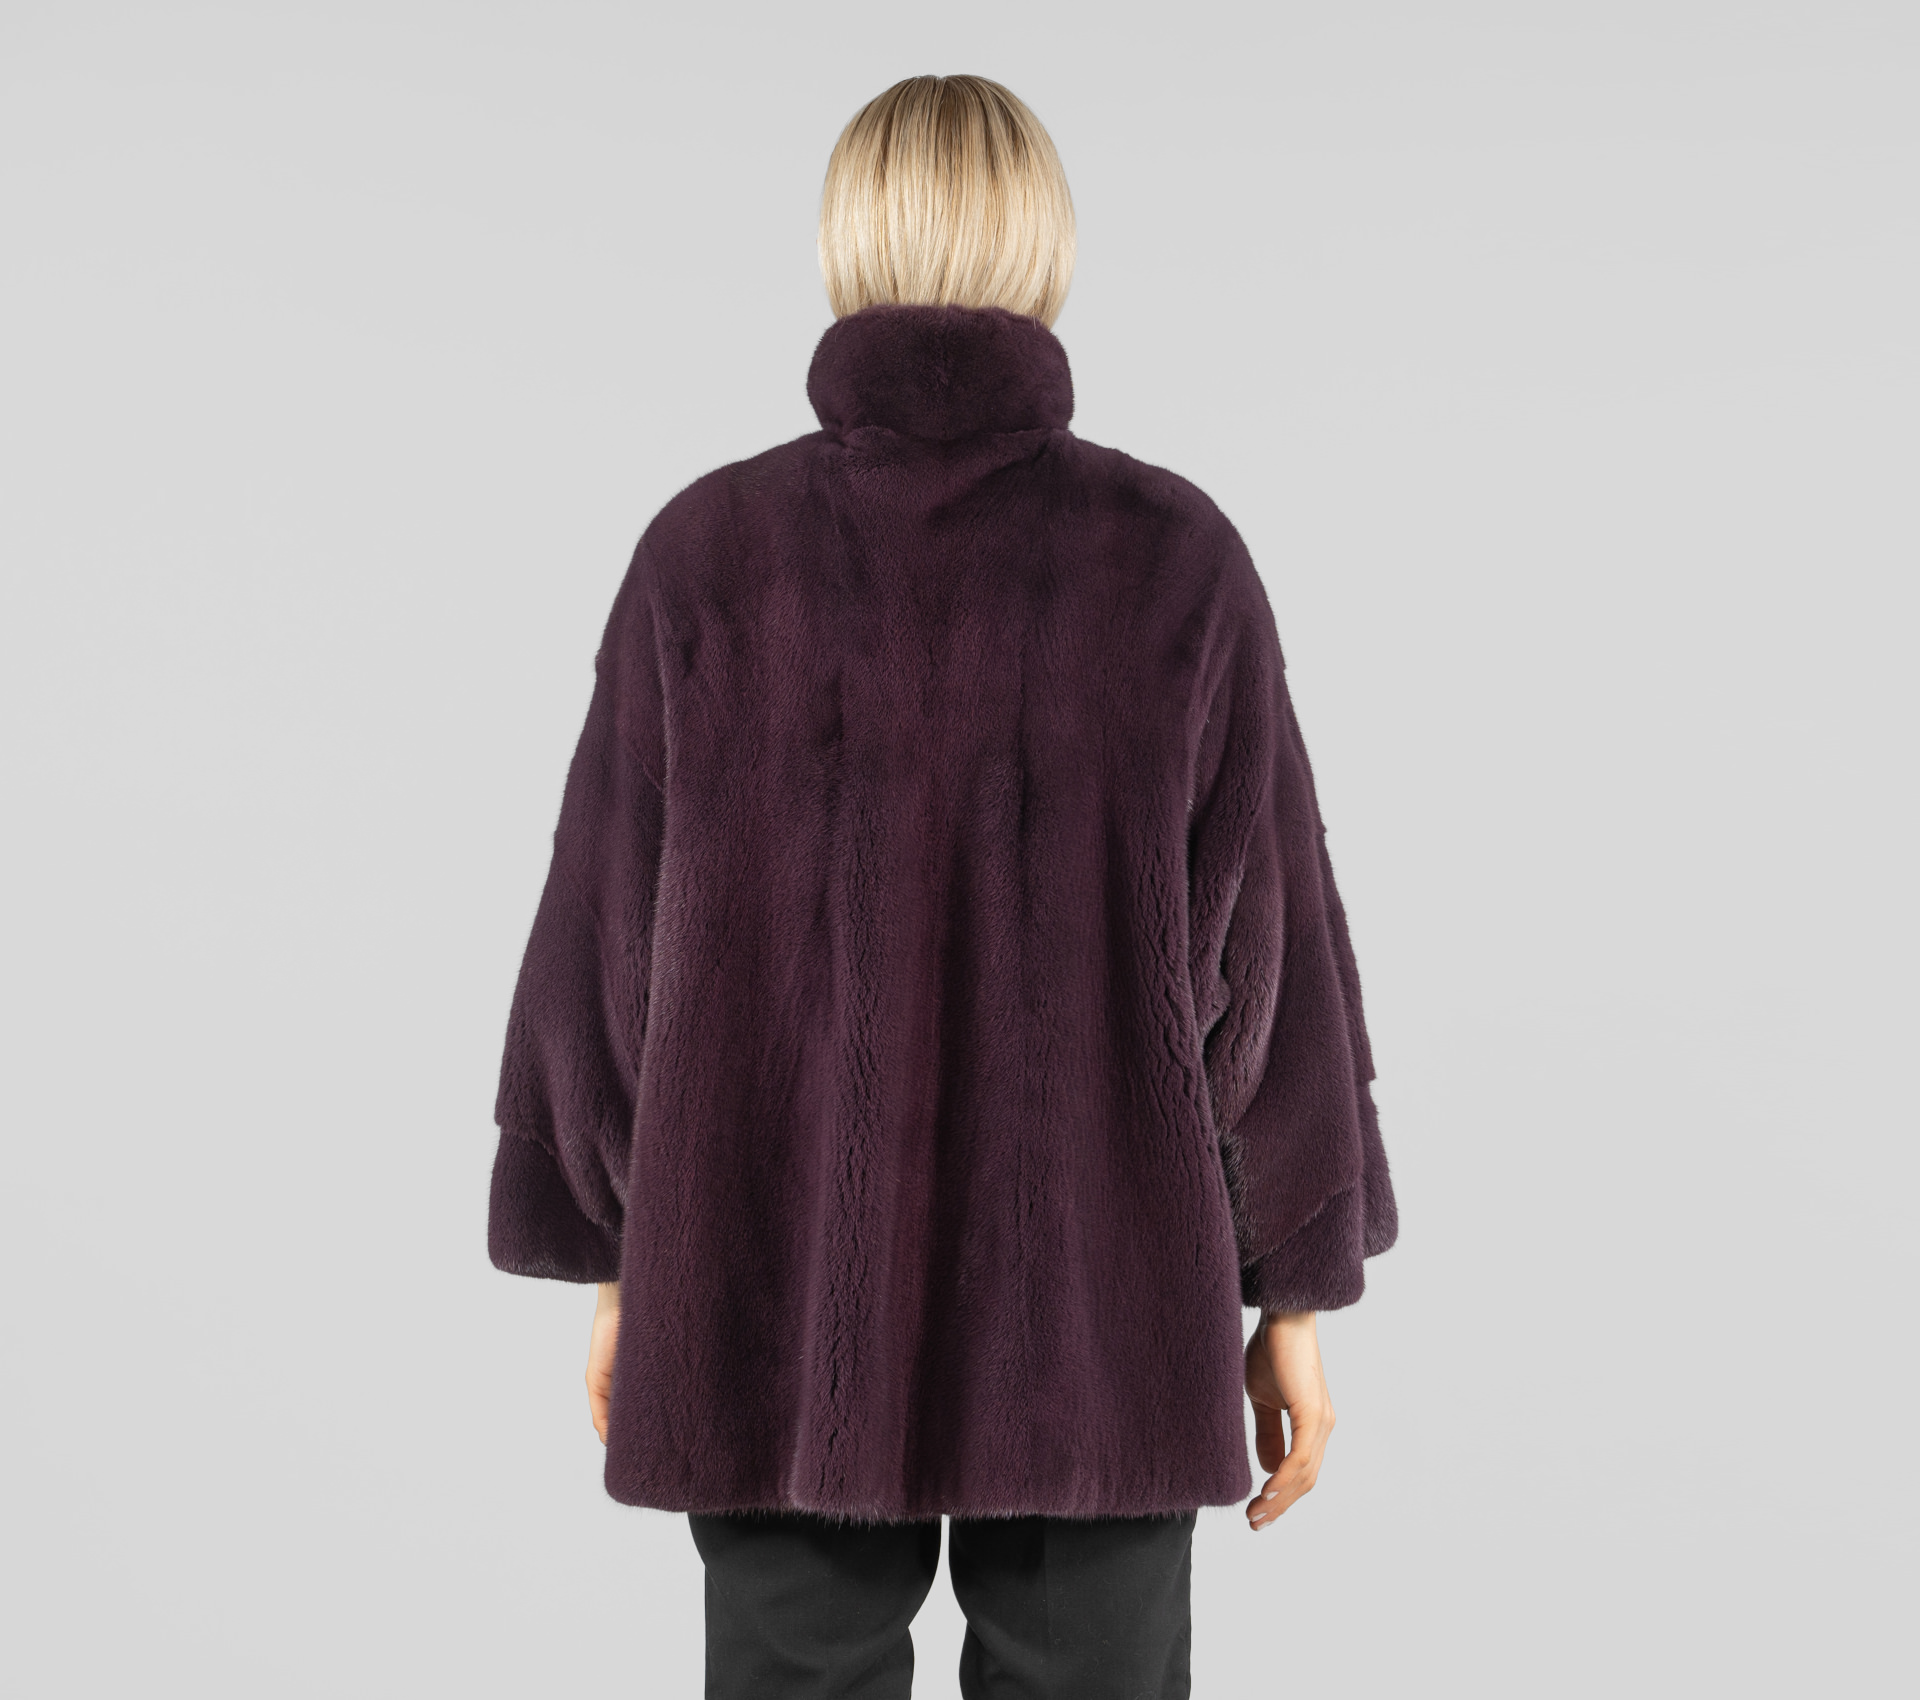 Purple 3/4 Sleeves Mink Fur Jacket - 100% Real Fur - Haute Acorn